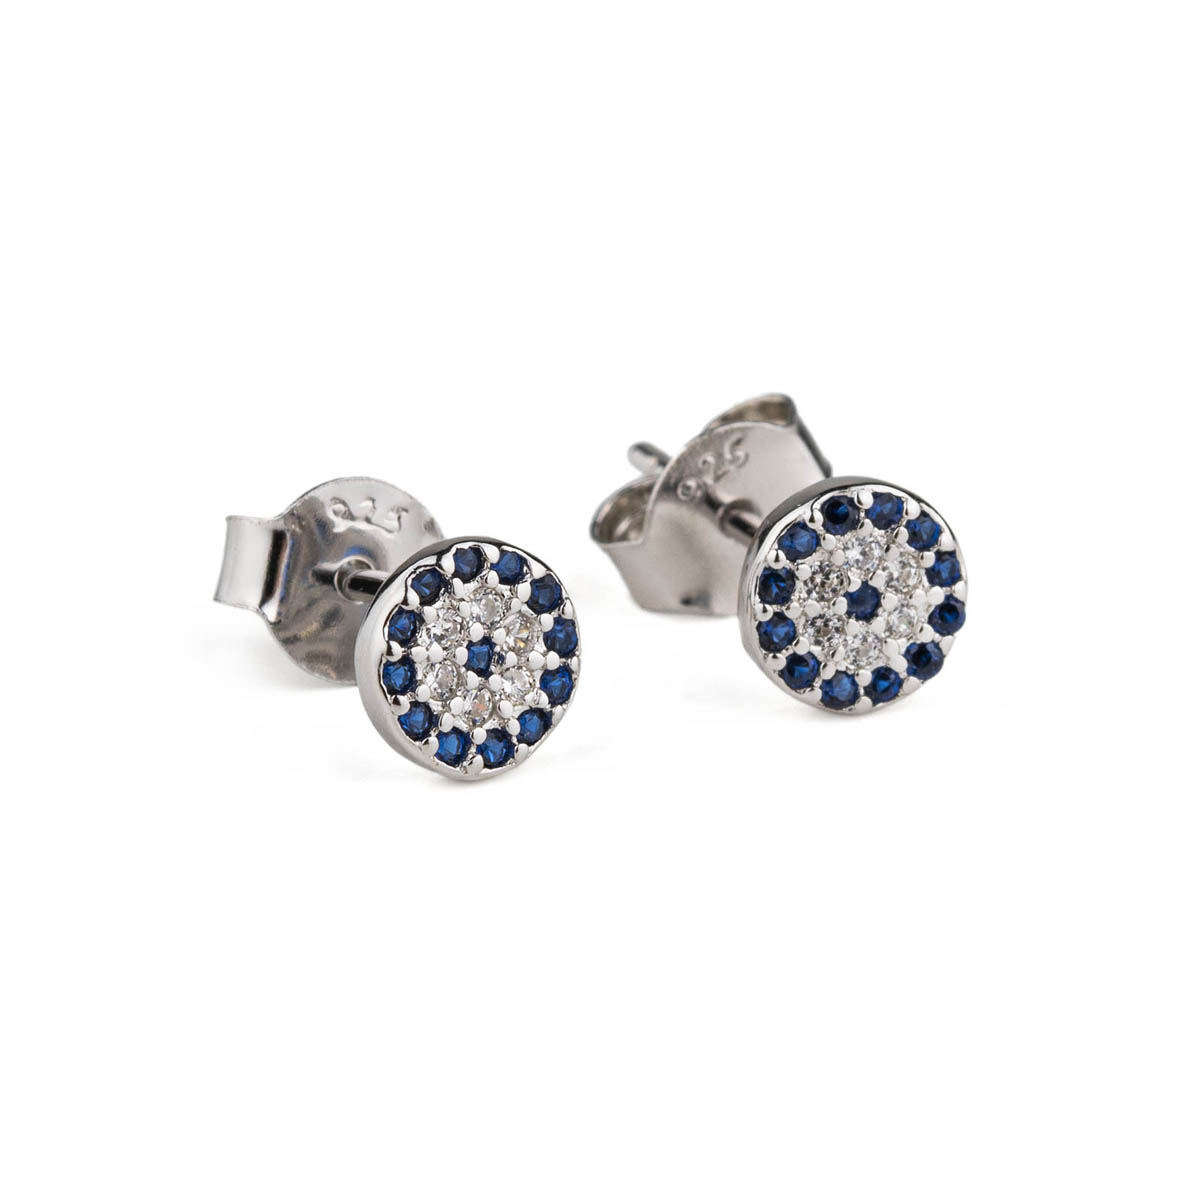 Stud Eye Earrings with blue zircon - Sterling Silver 925